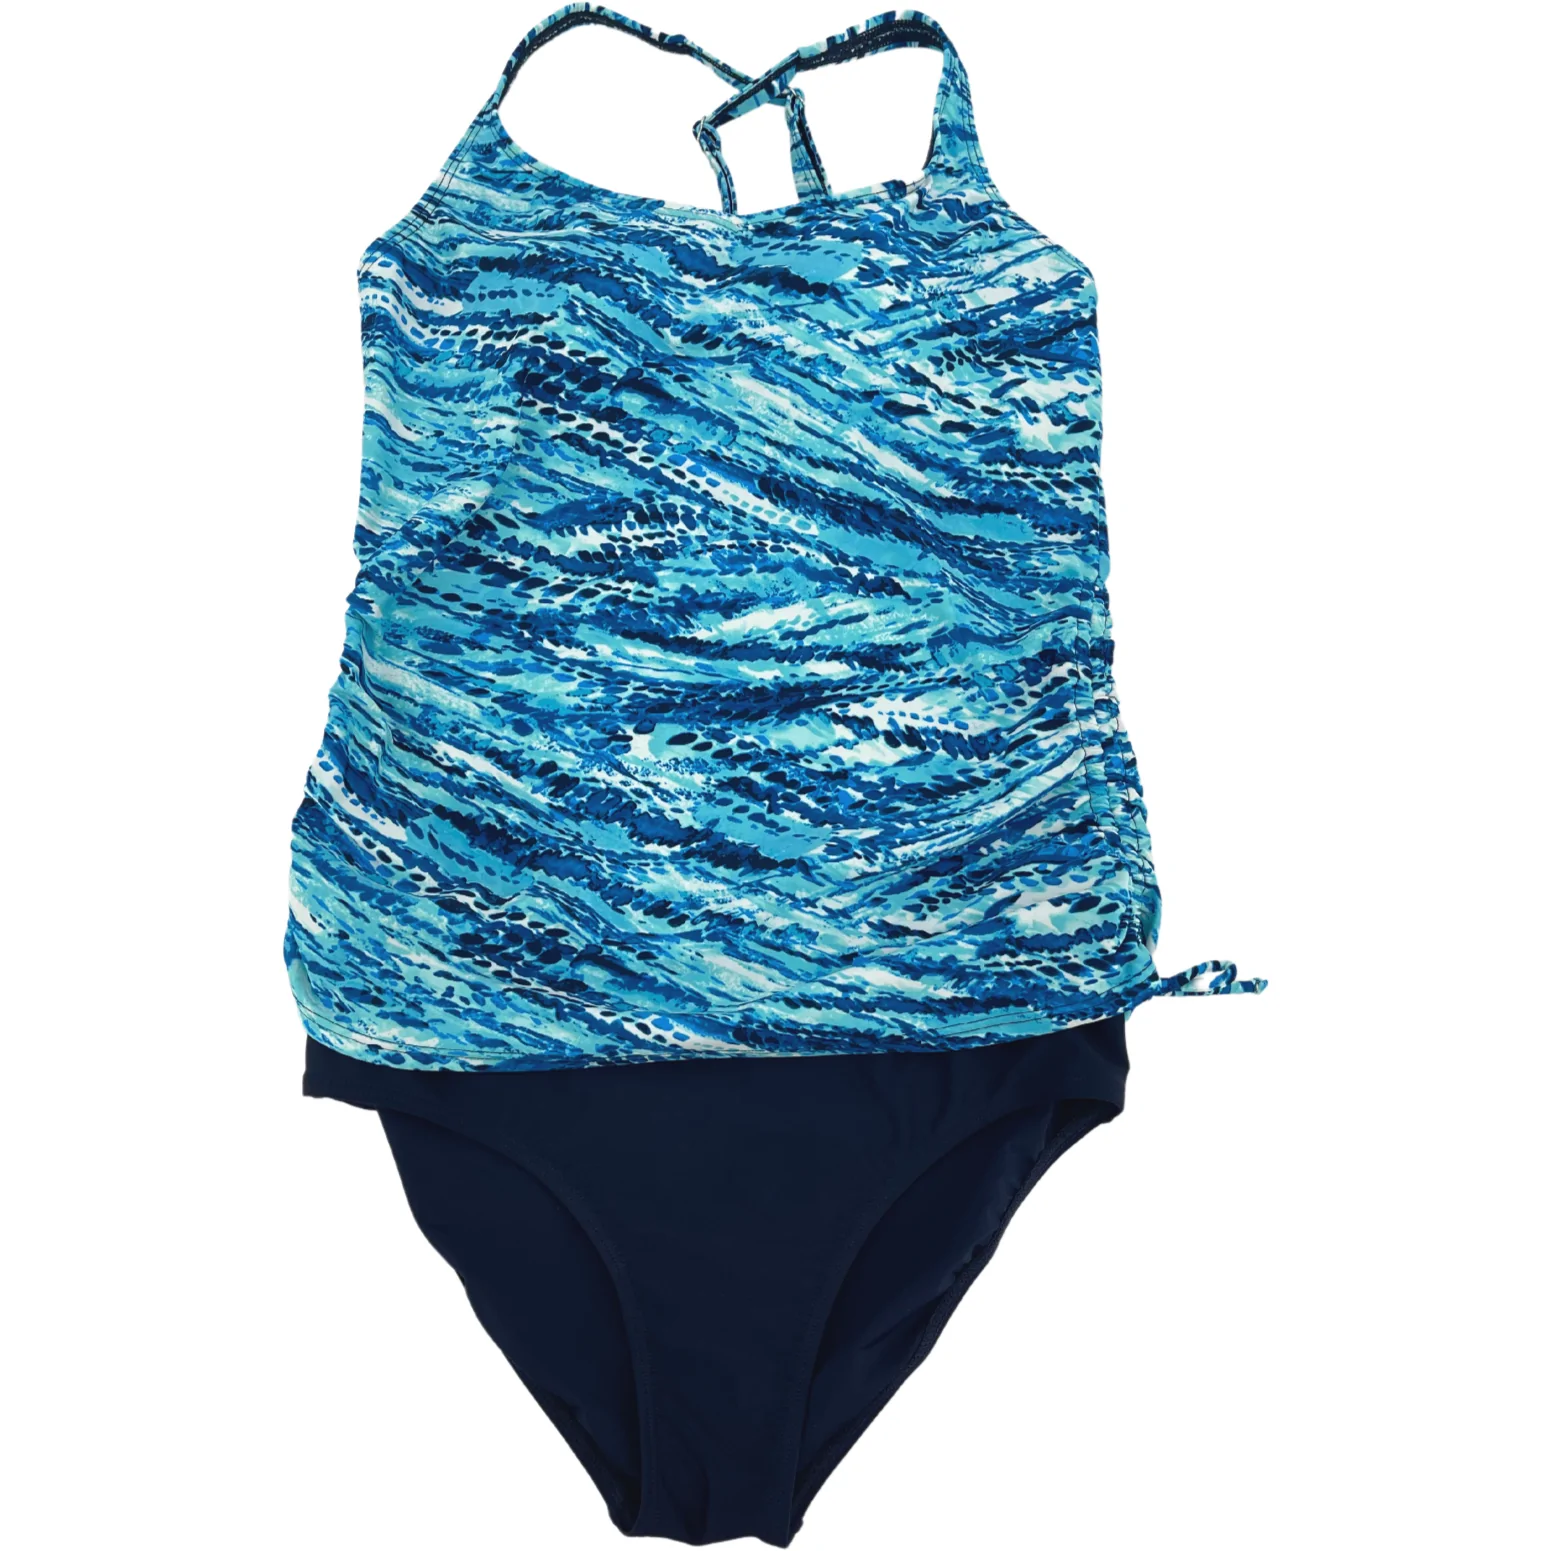 Roots Women's Bathing Suit / 2 Piece / Blue / Size 10